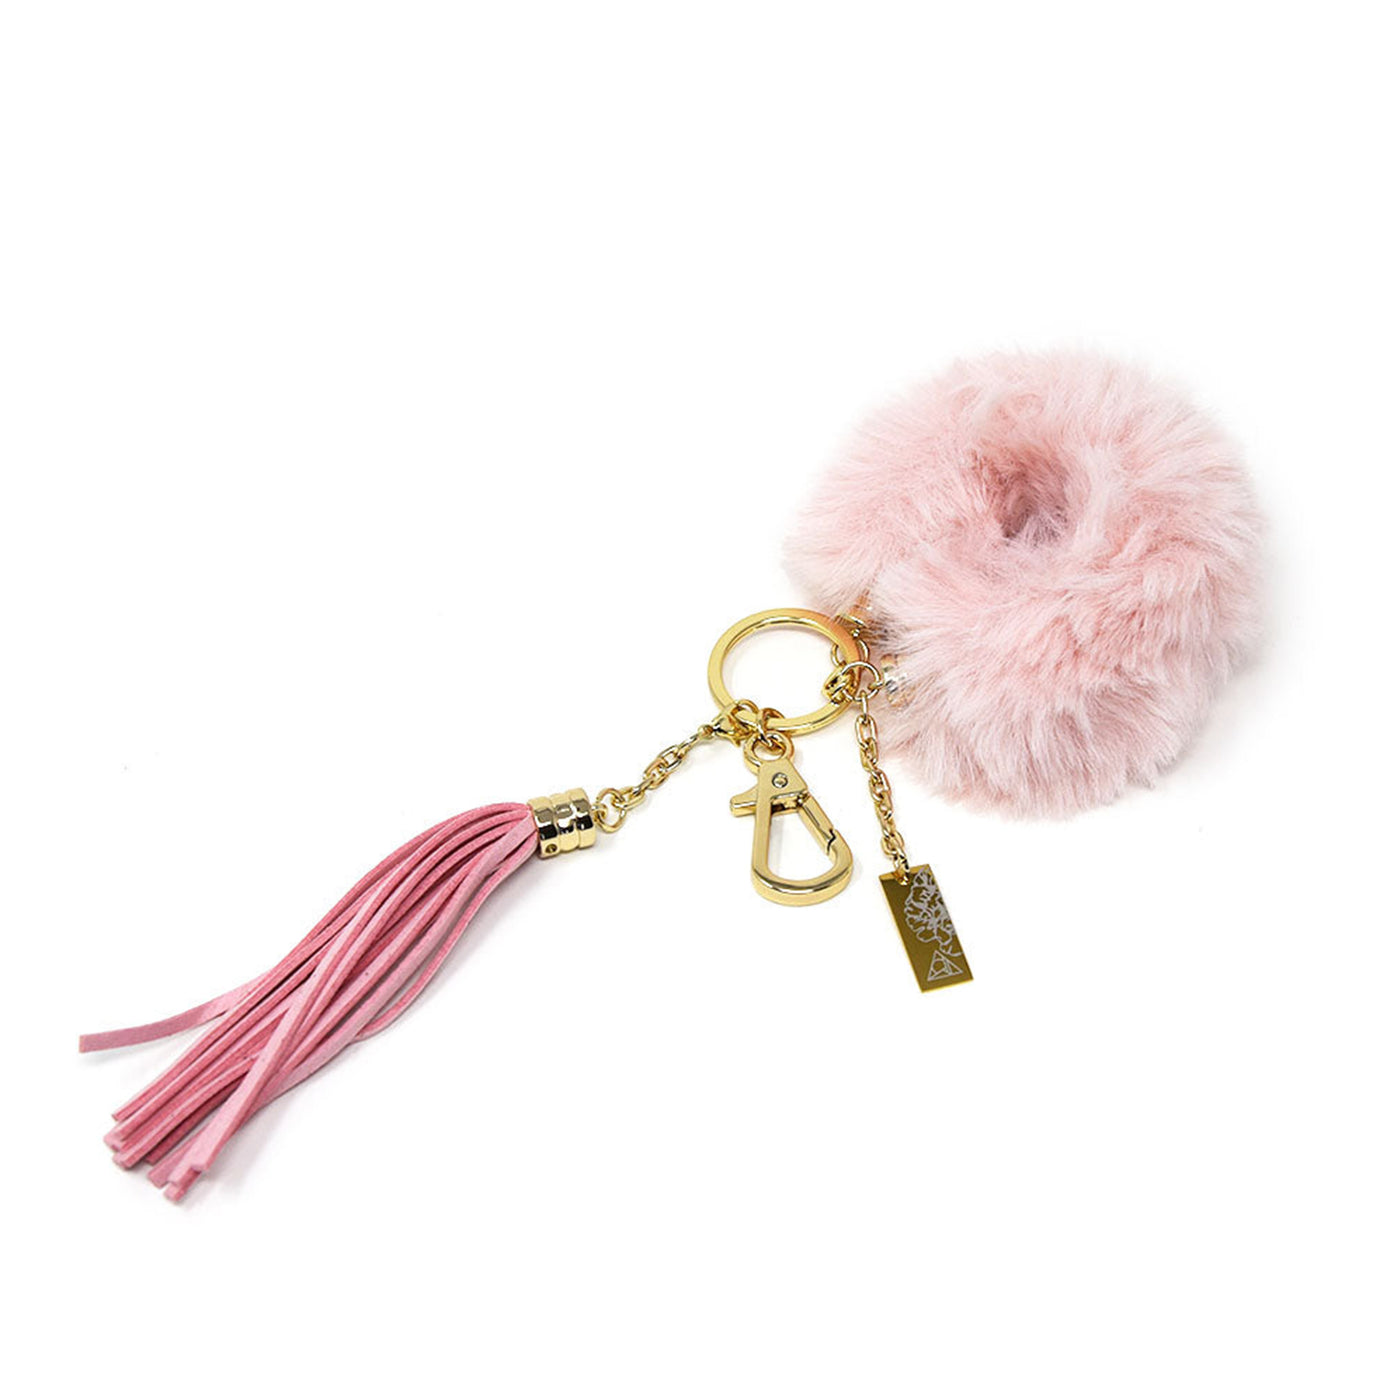 Keychain with Fuzzy Bracelet in Pink Gold & Peony Charm